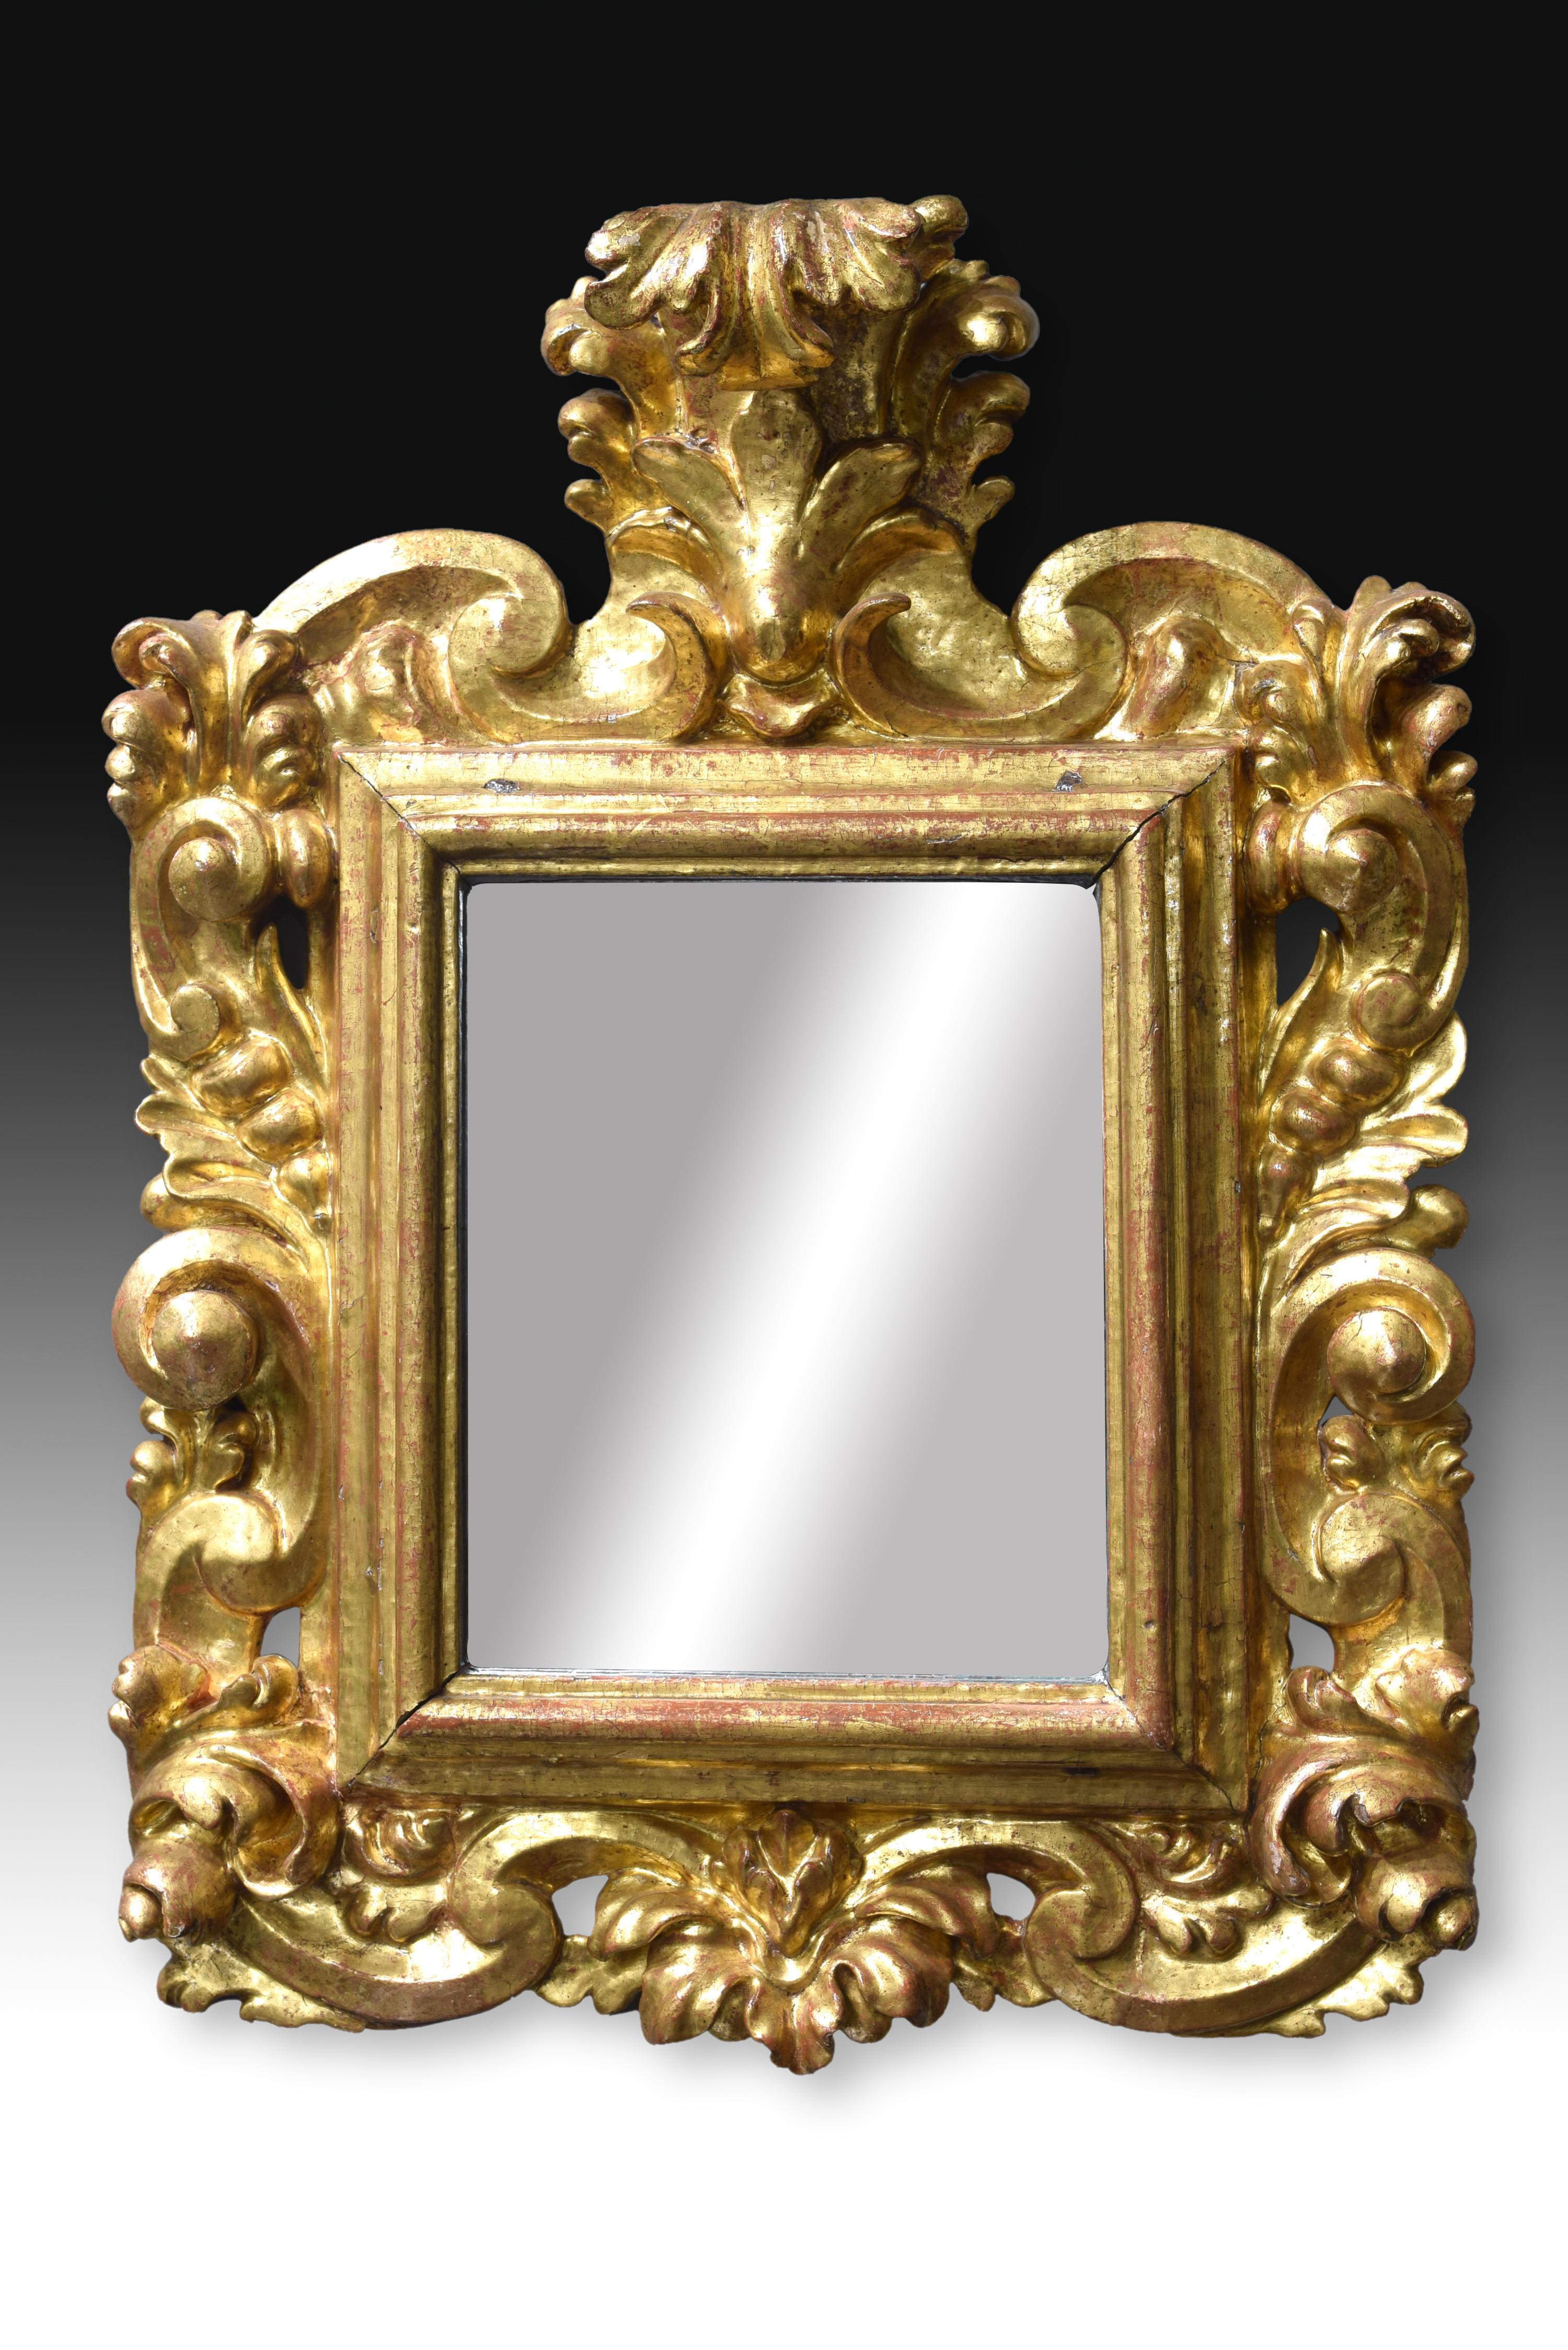 Die fleischige Dekoration der Außenseite dieses Spiegels und seine Bewegung ordnen dieses Kunstwerk dem Barock zu, aber sowohl die Harmonie und die Symmetrie als auch die Tatsache, dass die Dekoration nicht einfach aus dem rechteckigen Rahmen